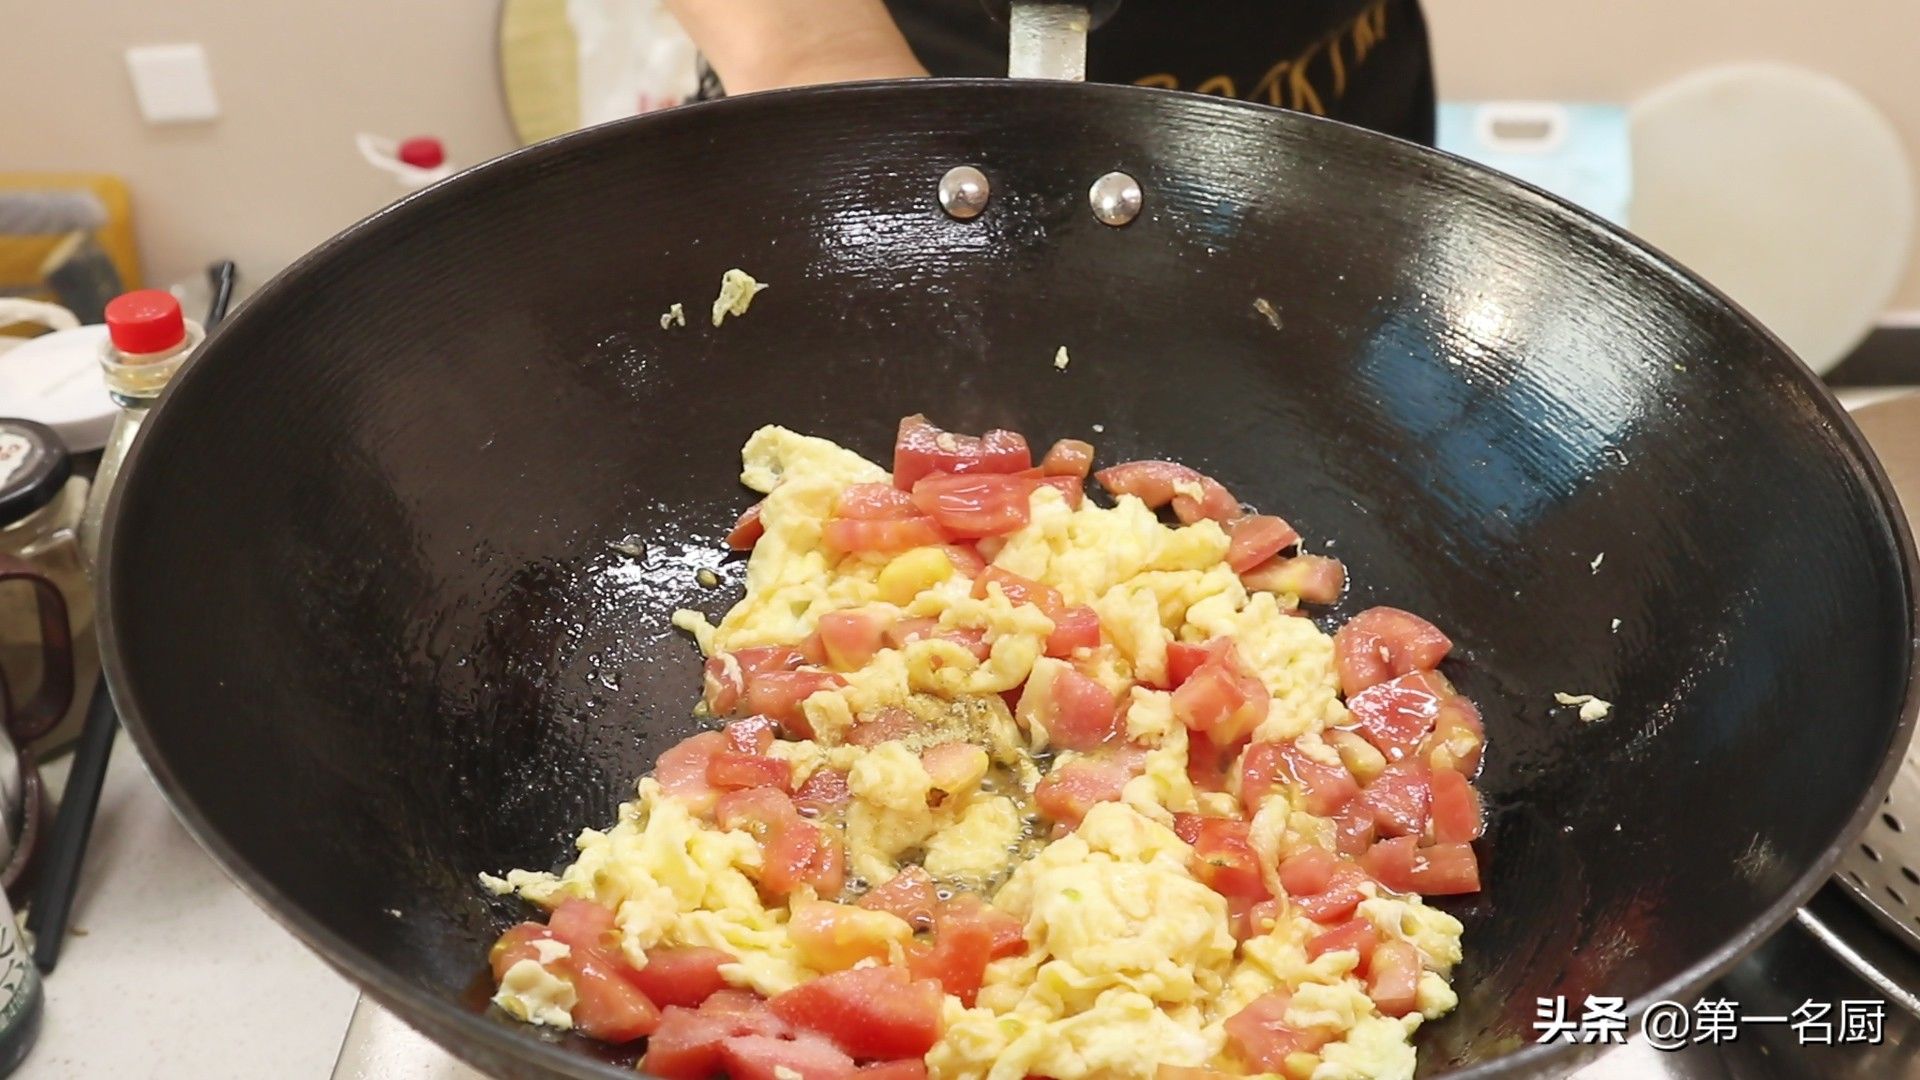 番茄炒蛋盖浇饭（西红柿鸡蛋盖浇饭”的家常做法）-第8张图片